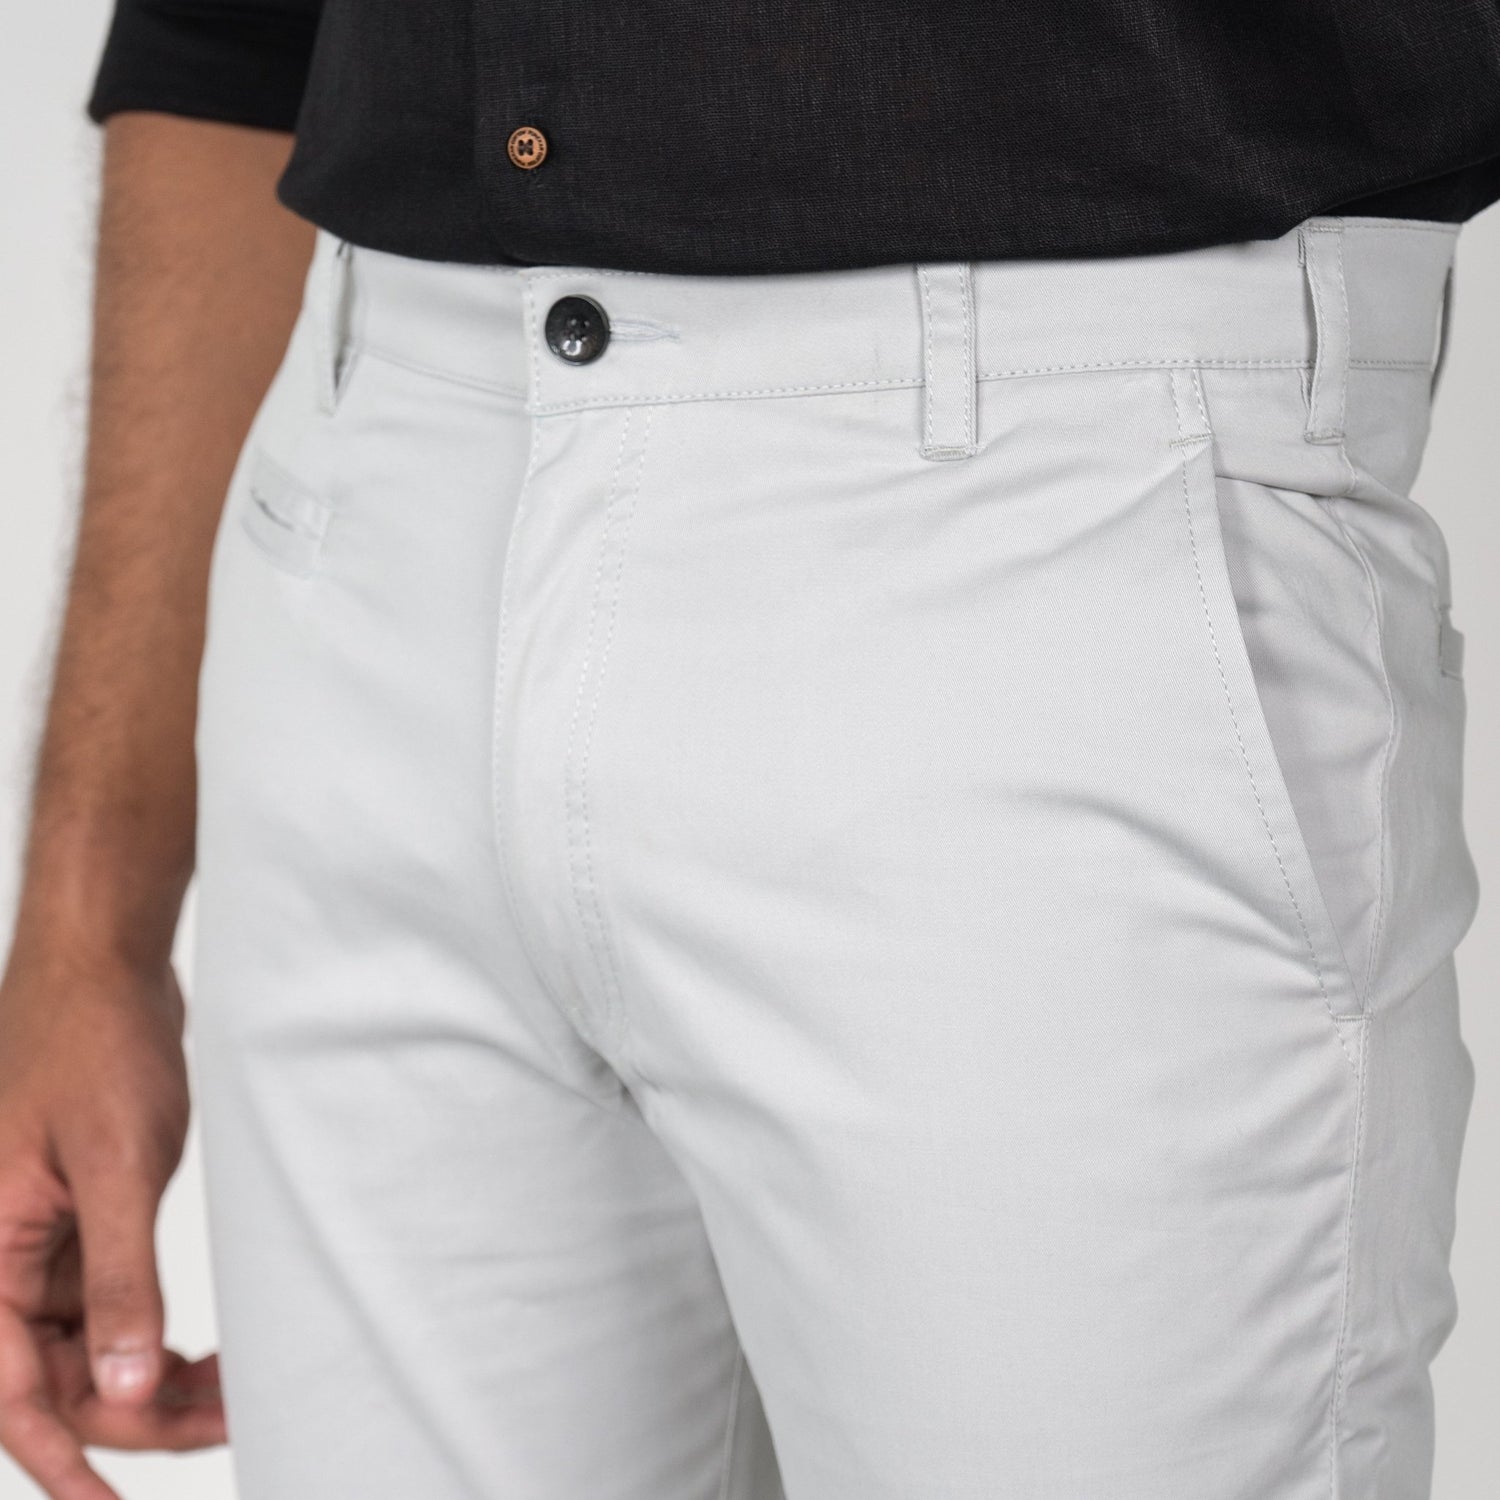 Light Grey Color Cotton Trouser Pants for Men - Punekar Cotton